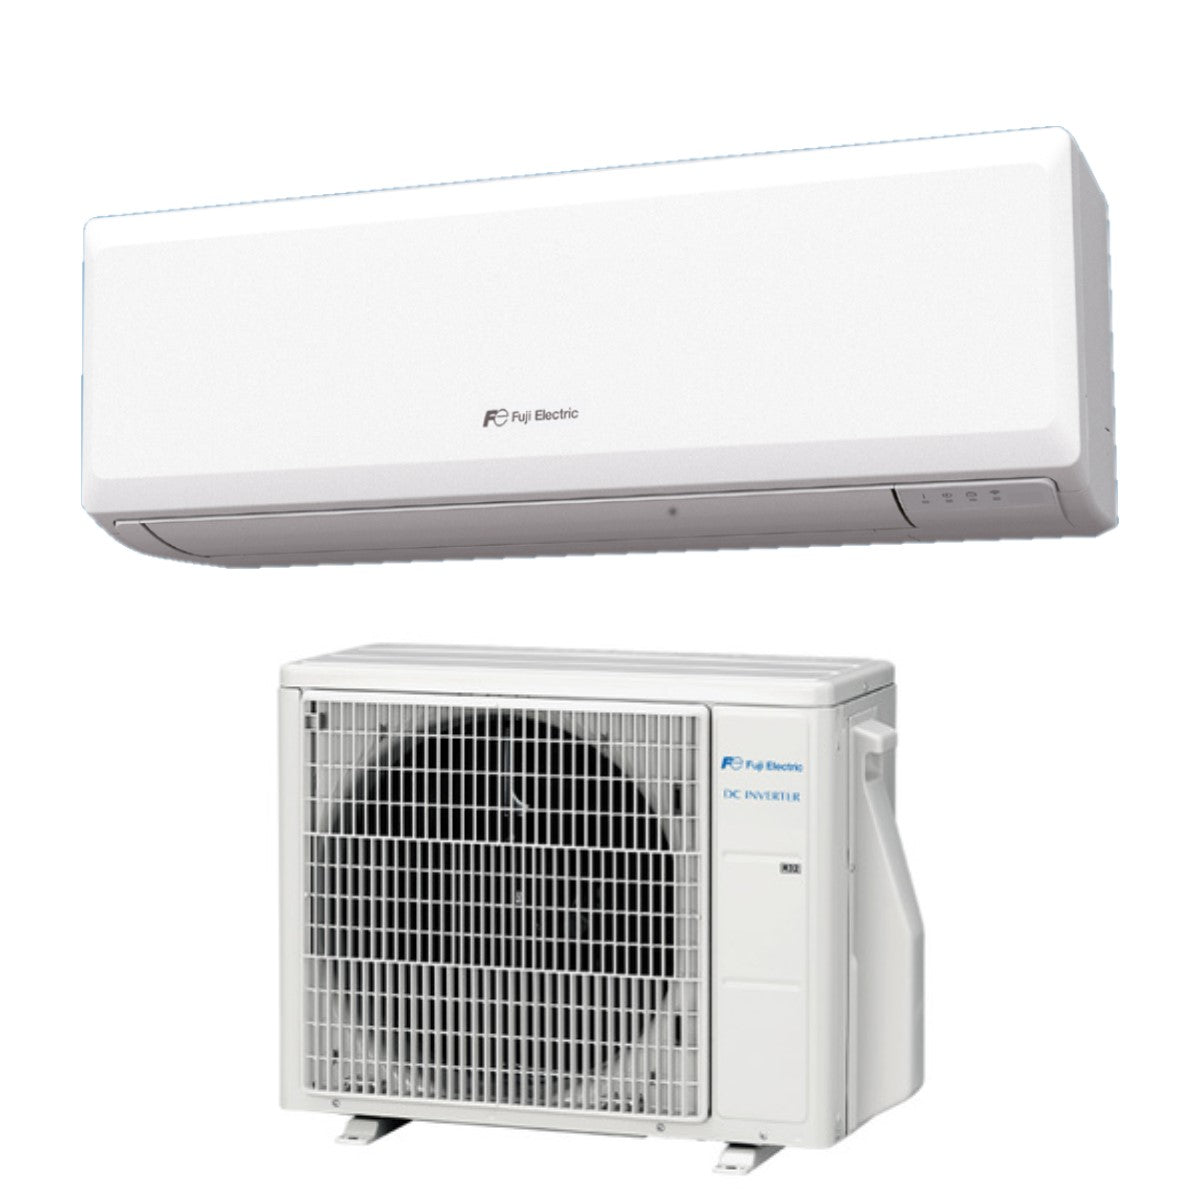 immagine-1-fuji-electric-climatizzatore-condizionatore-fuji-electric-inverter-serie-kp-12000-btu-rsg12kpca-r-32-wi-fi-optional-aa